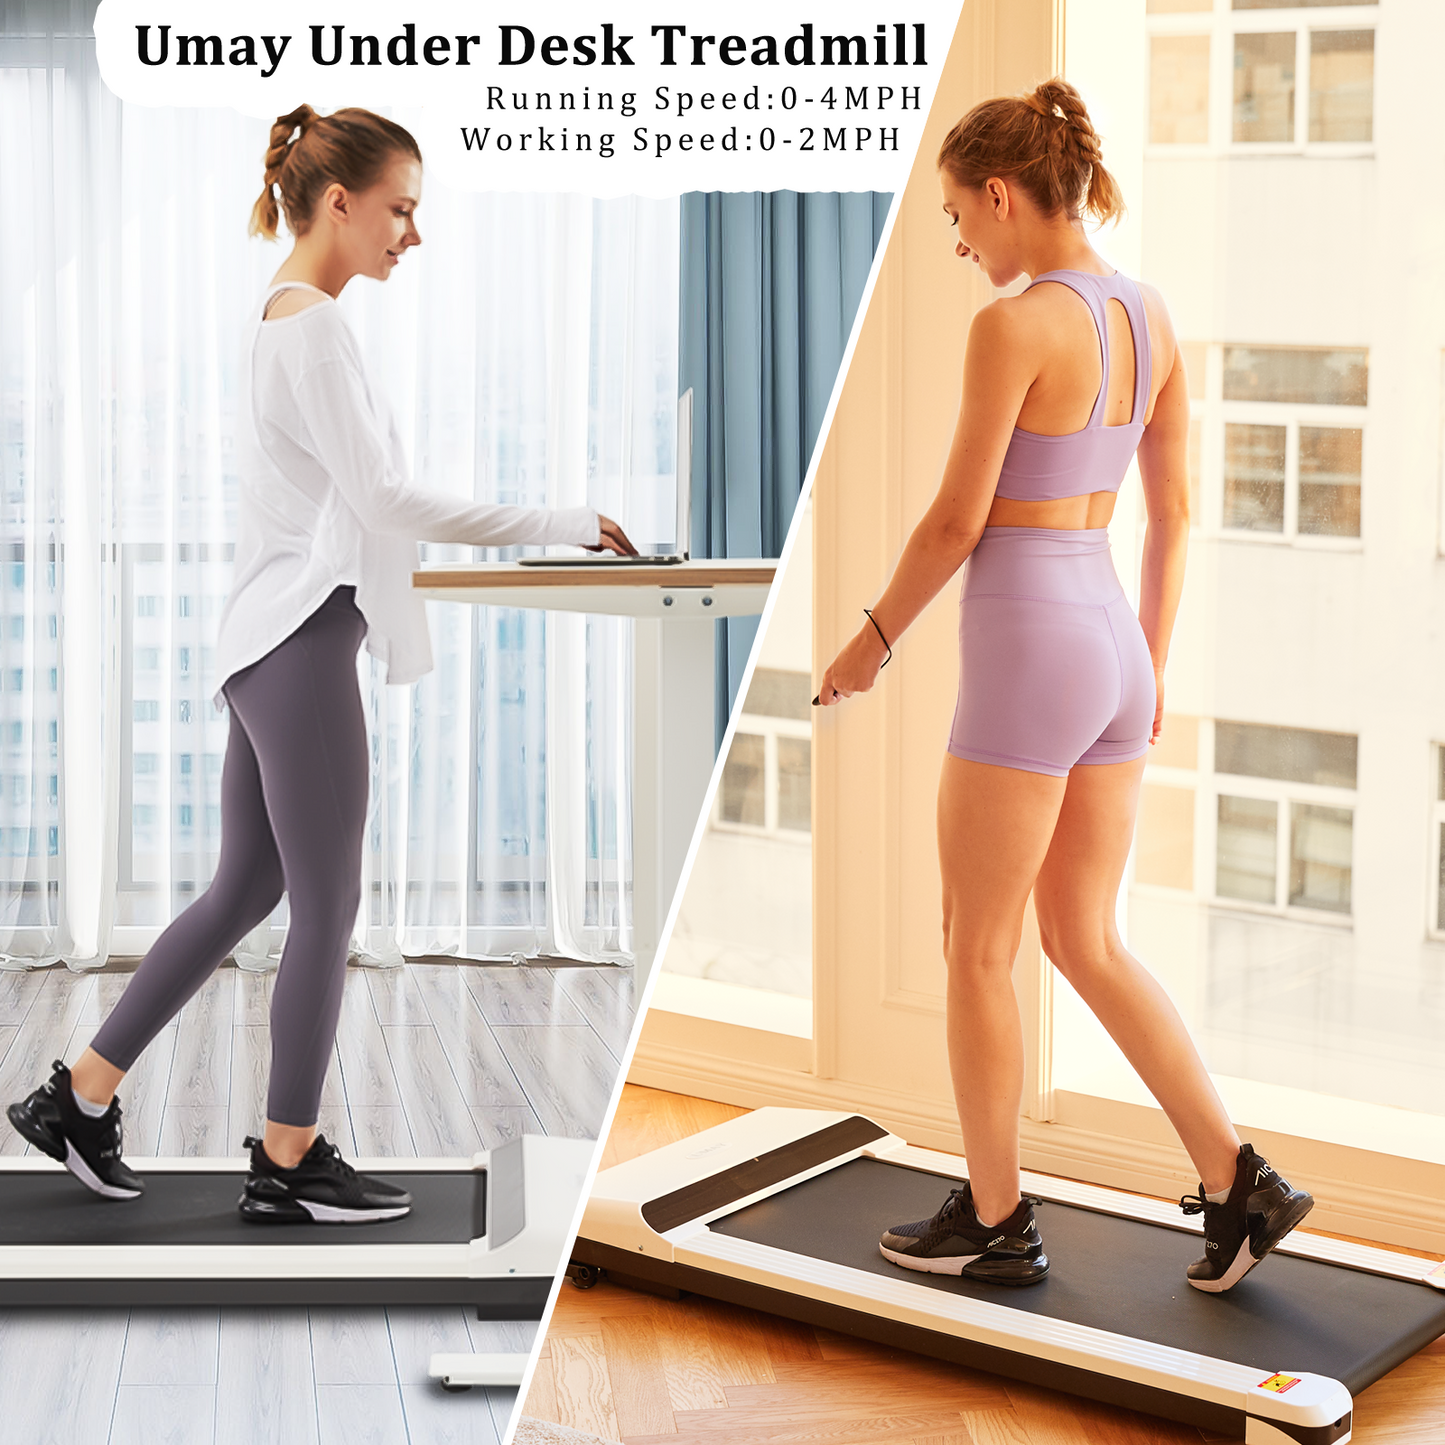 UMAY Walking Pad Treadmill Under Desk Treadmill for Home Office